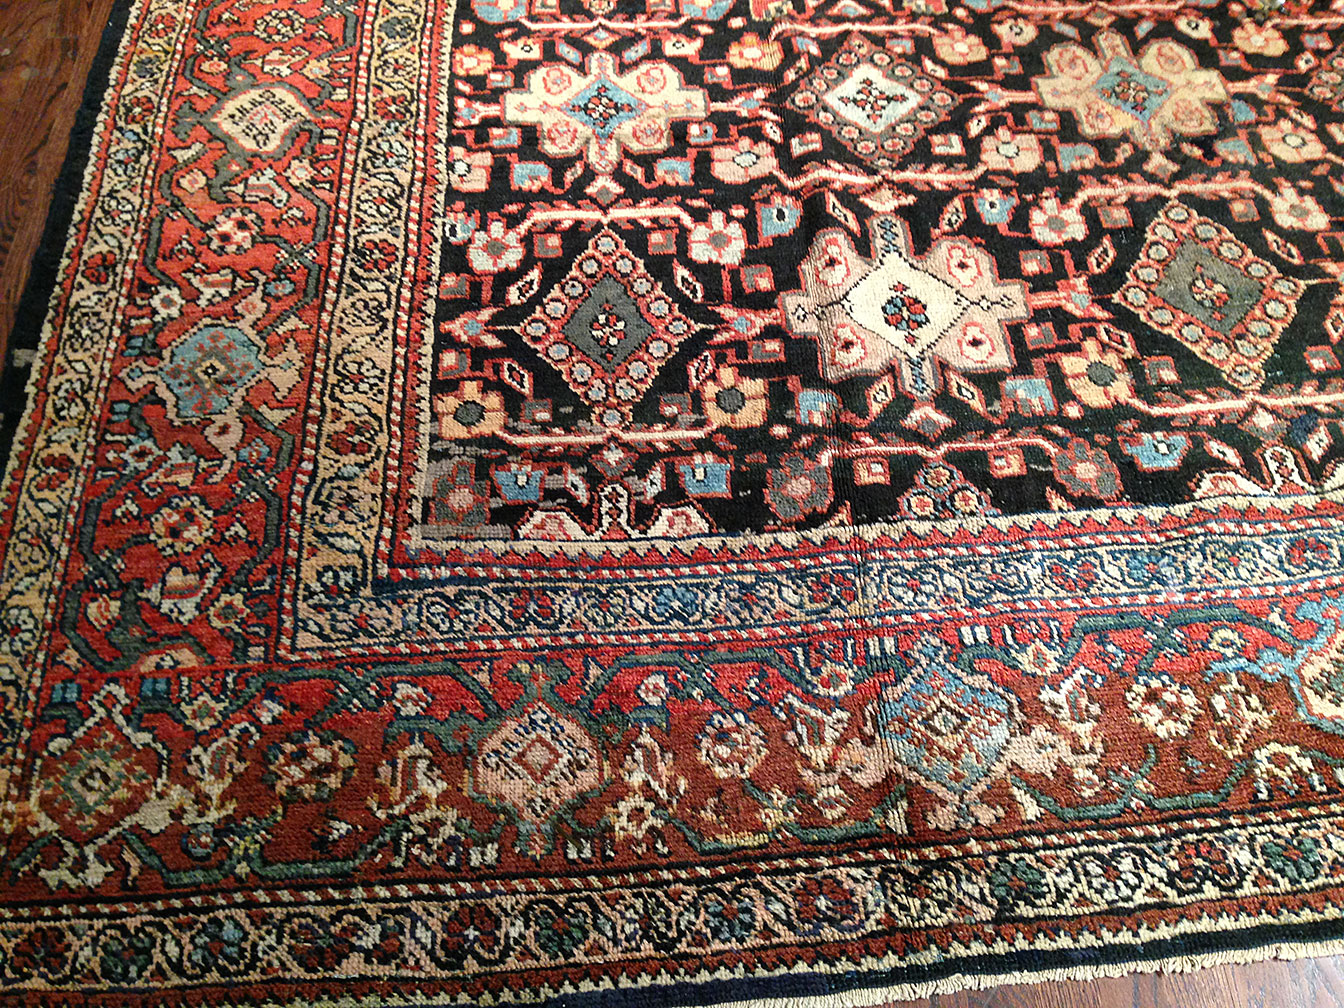 Antique mahal Carpet - # 41067